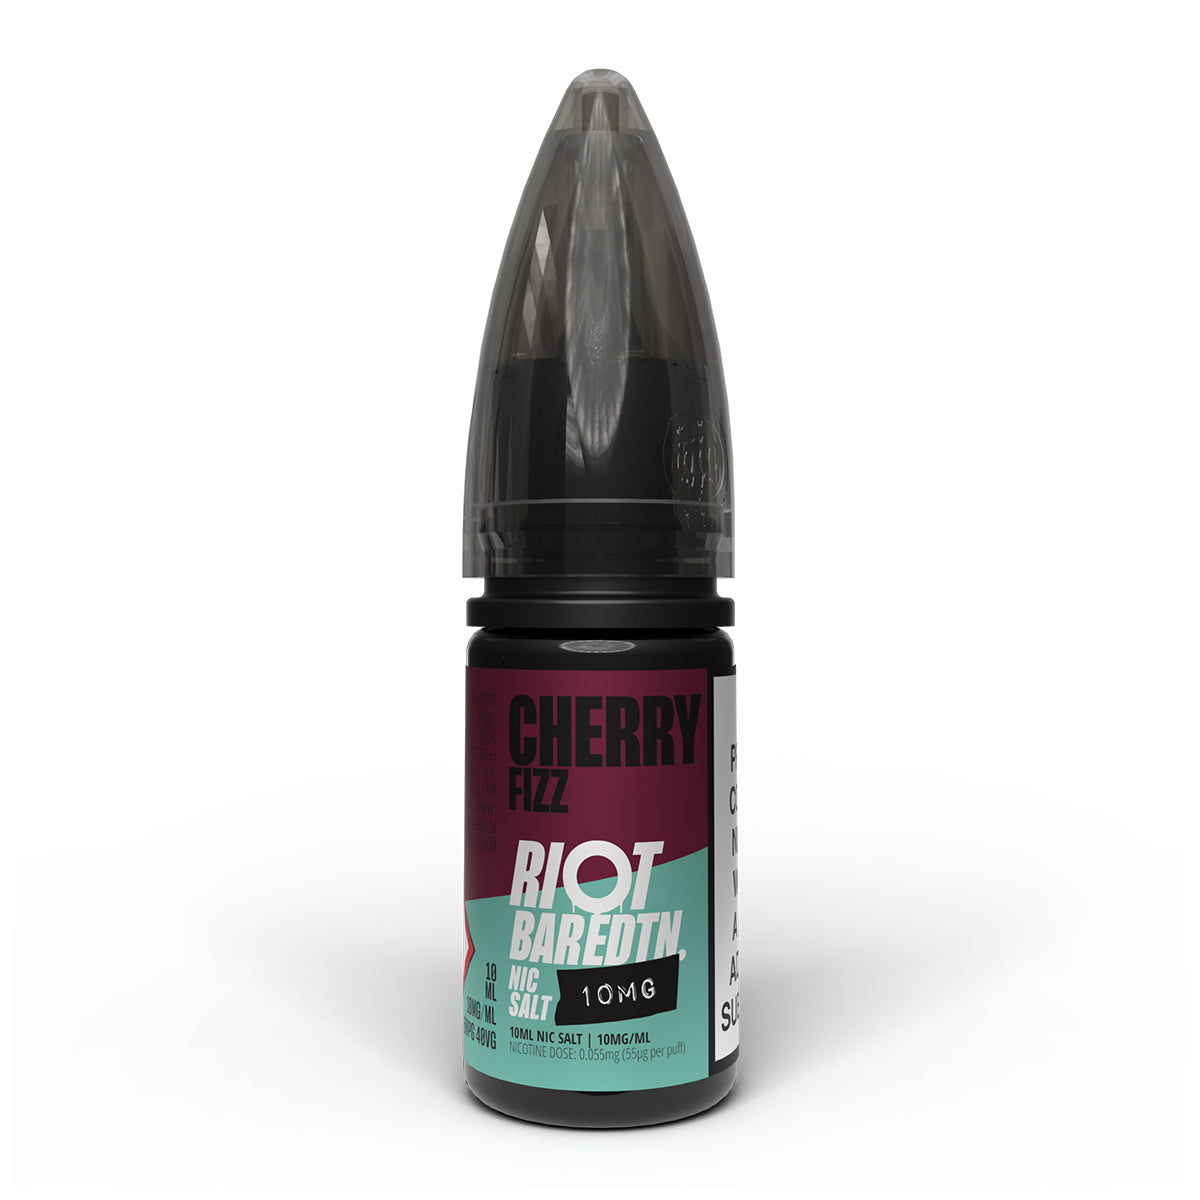 Cherry Fizz 10ml Nicotine Salt 10mg by Riot Bar Edtn